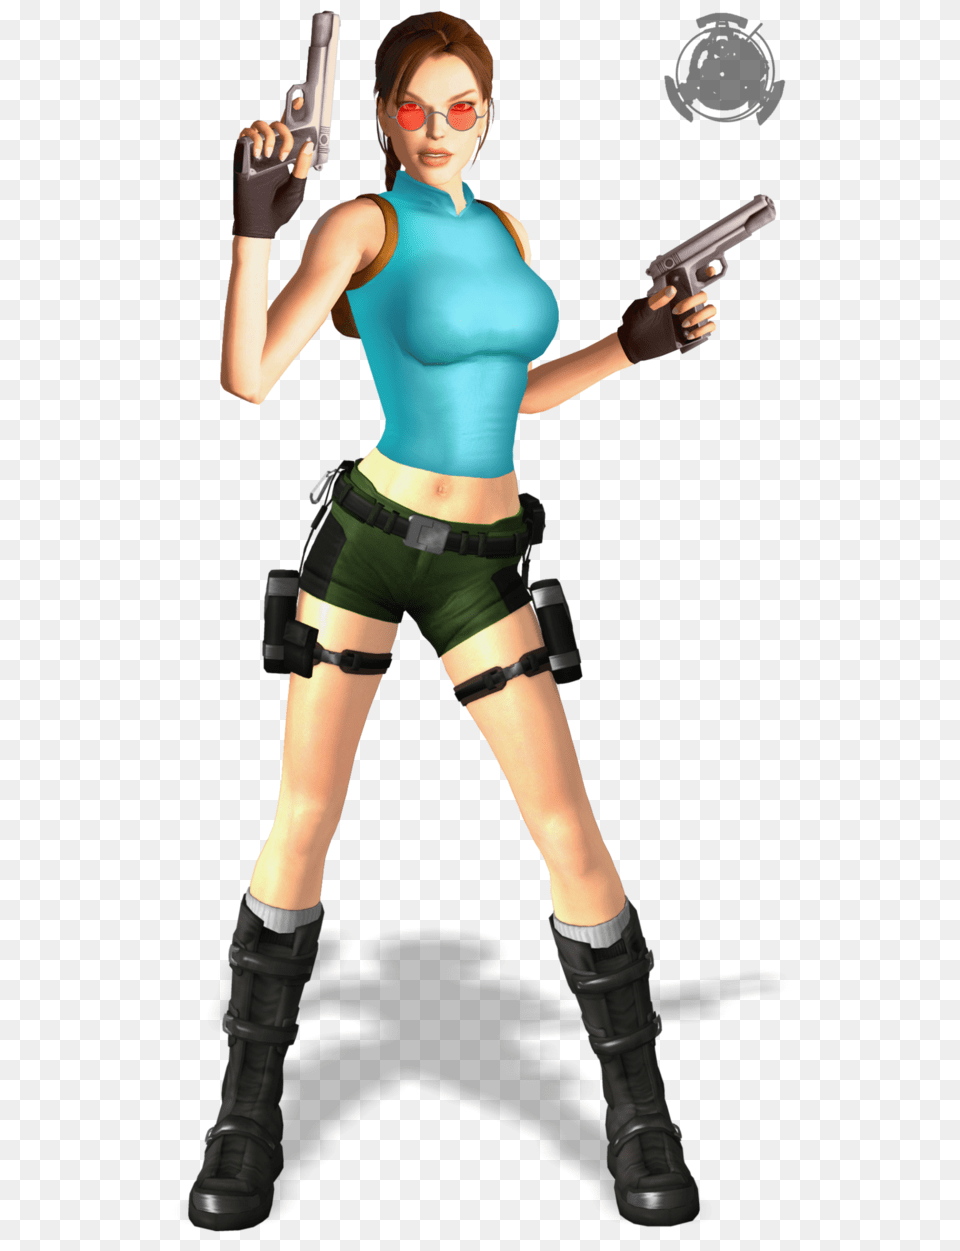 Lara Croft, Gun, Clothing, Costume, Weapon Free Png